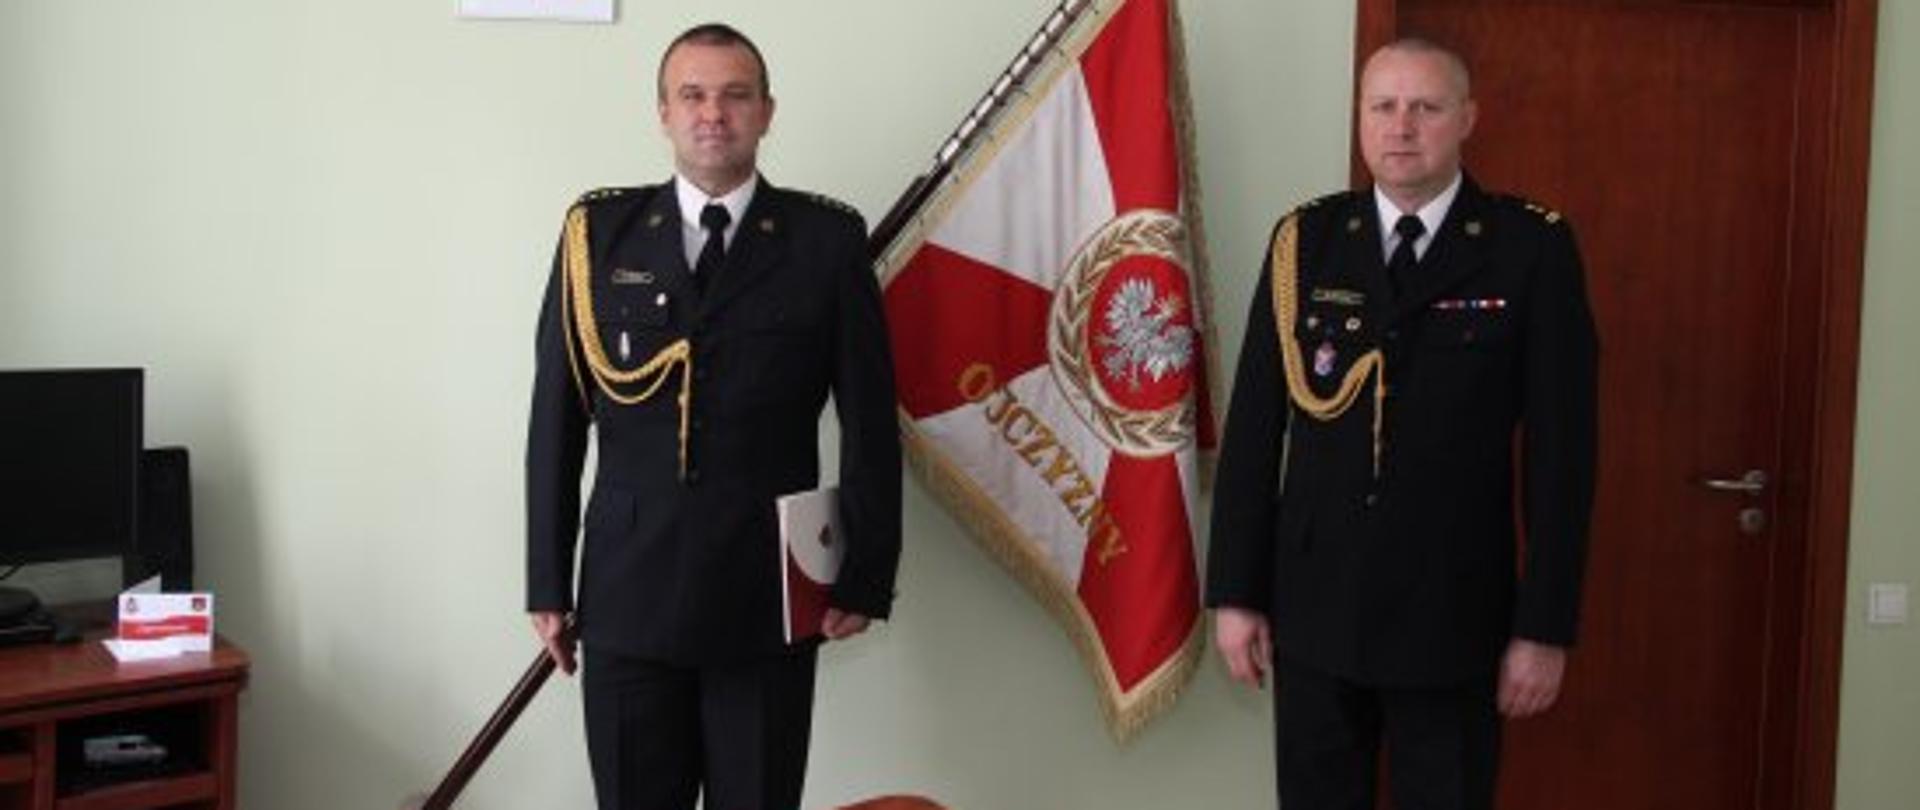 Dwóch strażaków stojących na baczność w mundurach wyjściowych ze złotym sznurem, nw tle stoi brązowe biurko, sztandar oraz godło polskie